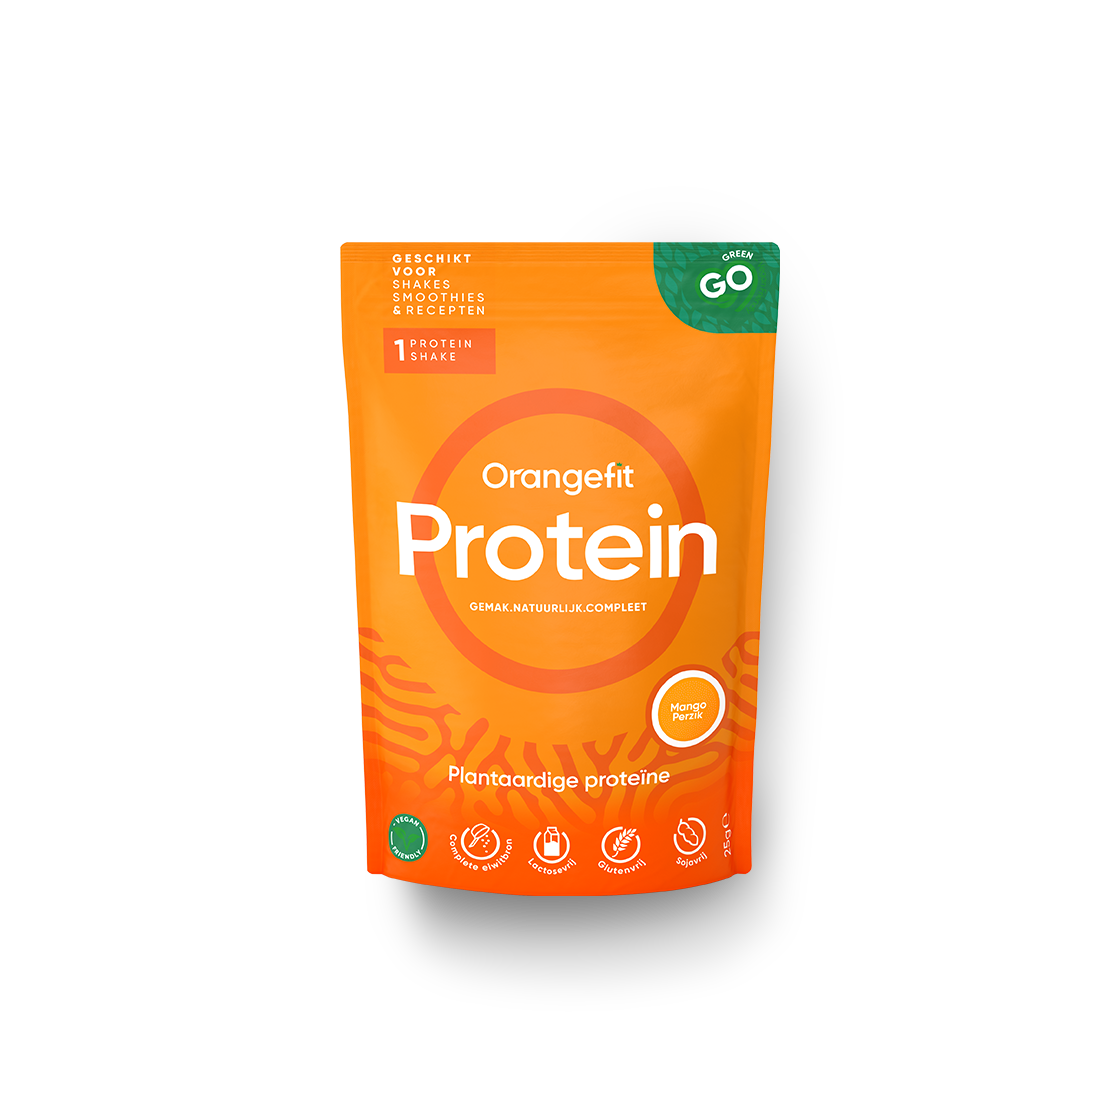 Orangefit Protein-Shake Portionsbeutel Mango-Pfirsich, 25g